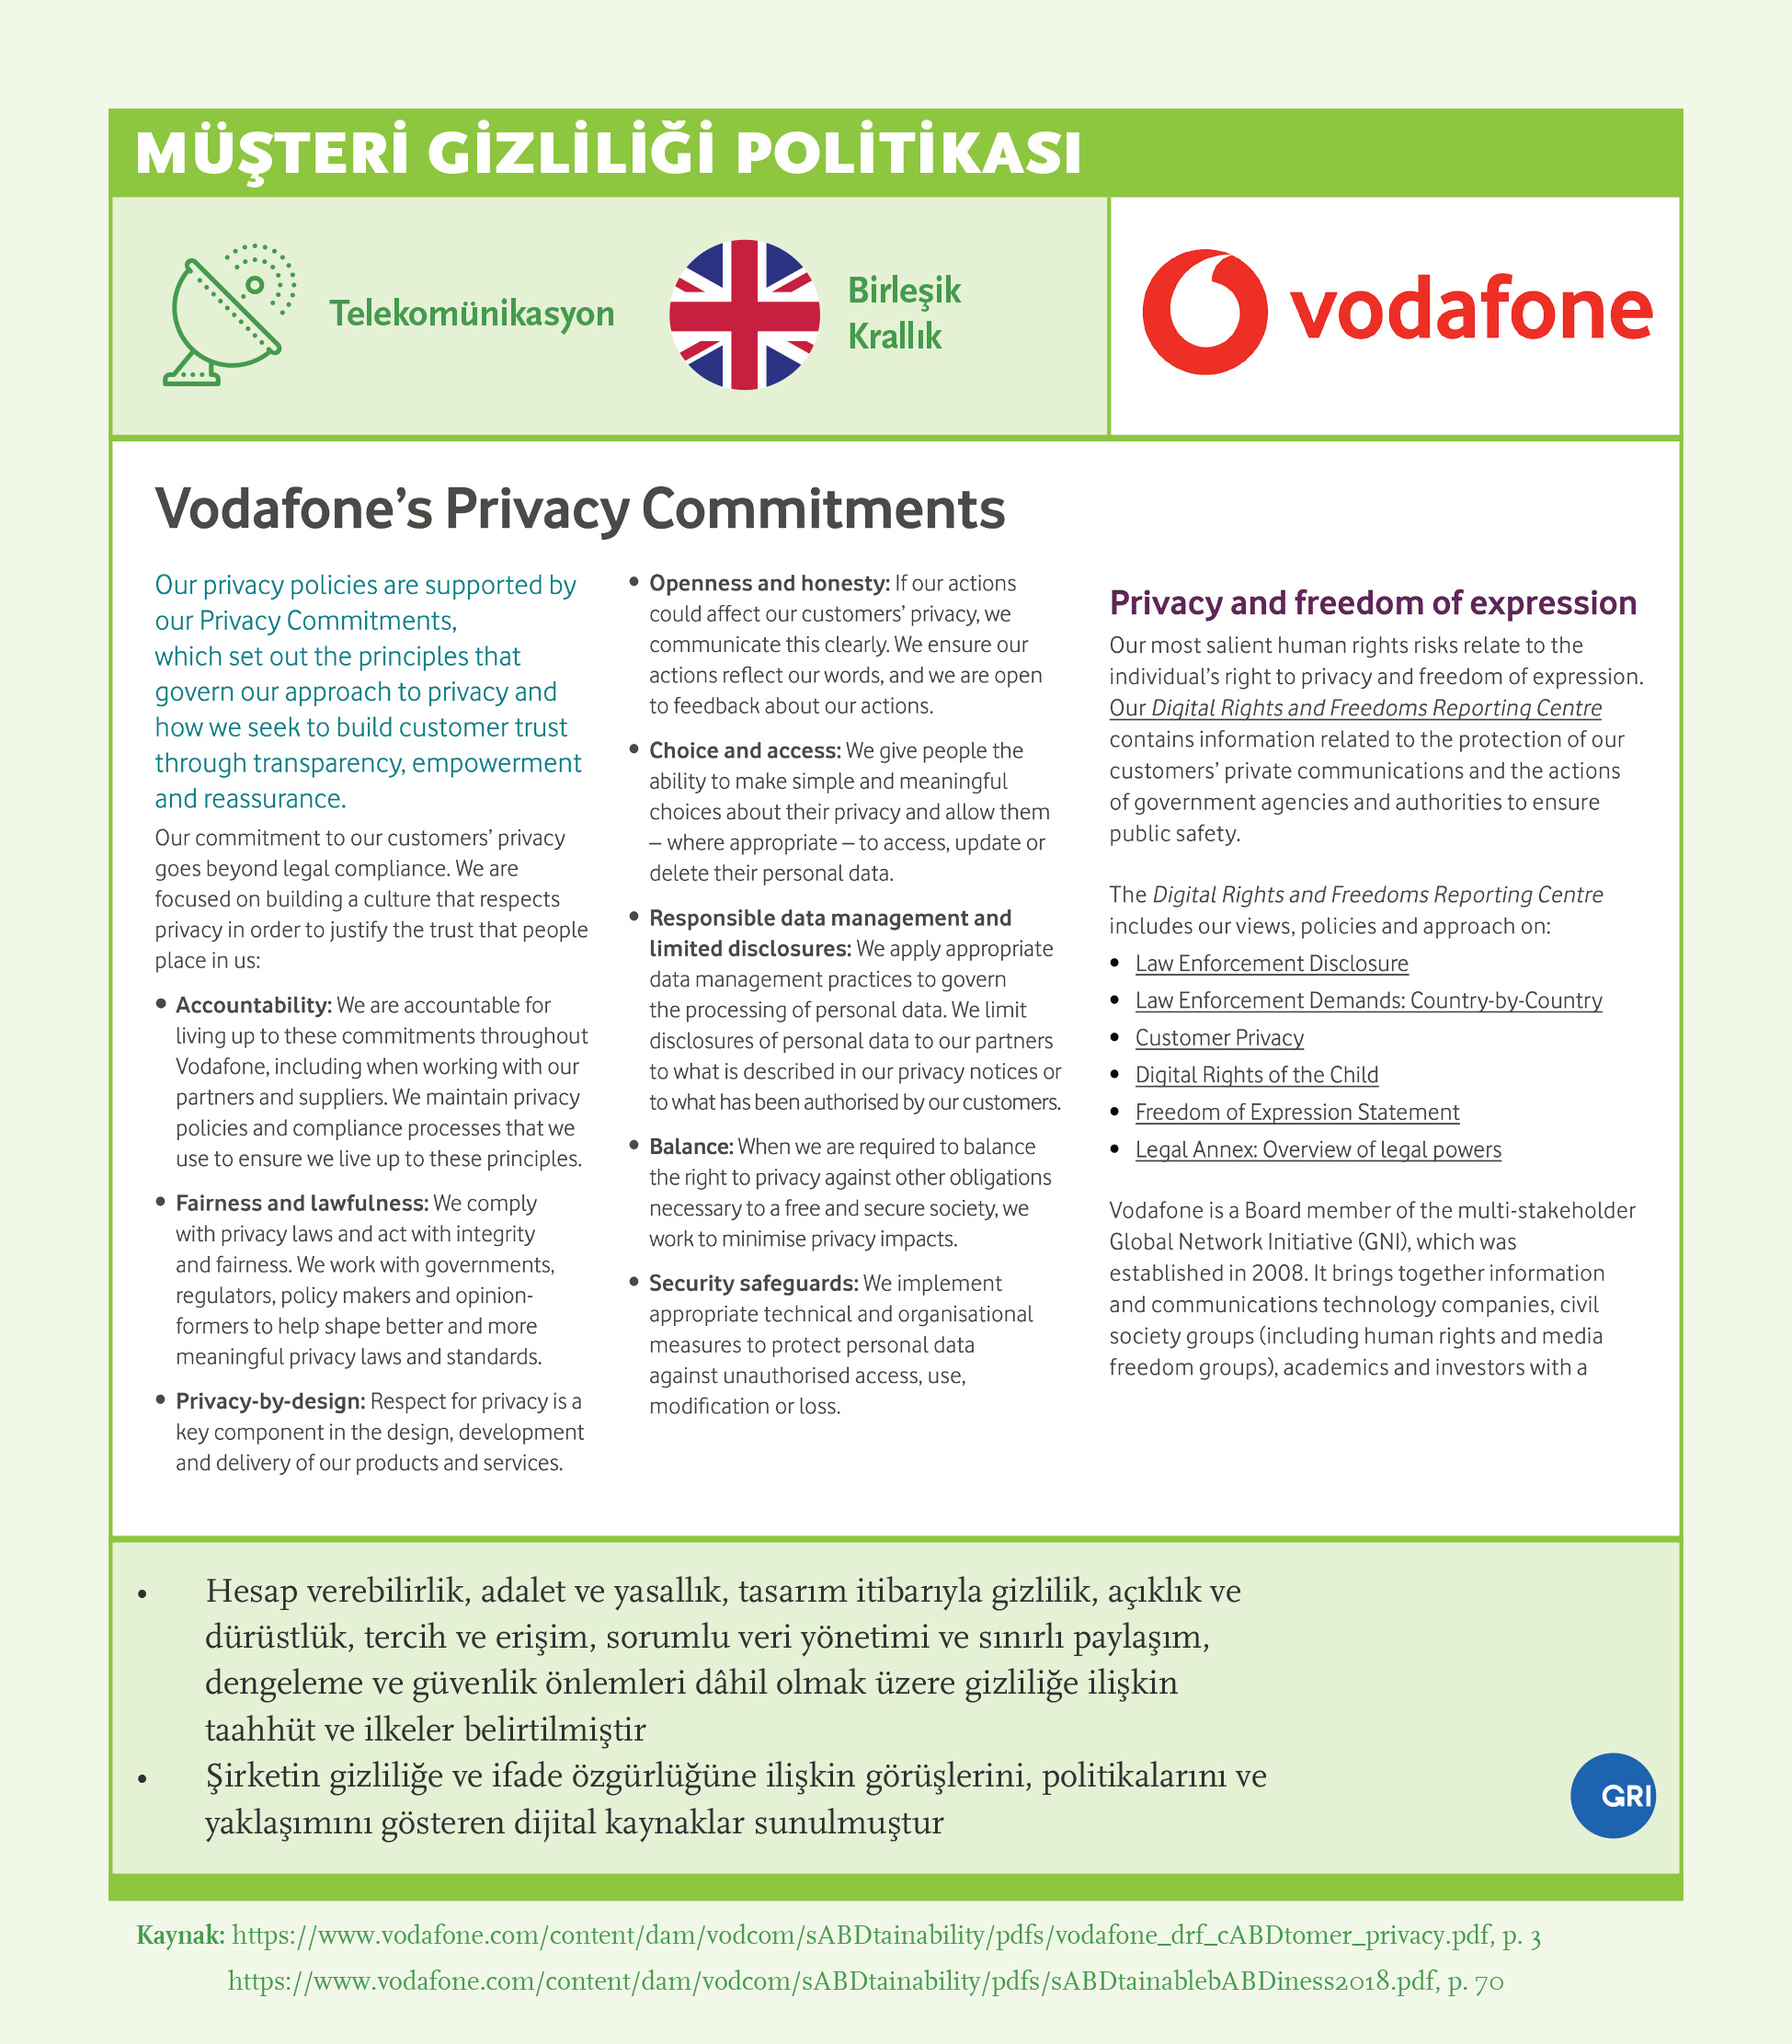 Müşteri Gizliliği Politikası: Vodafone